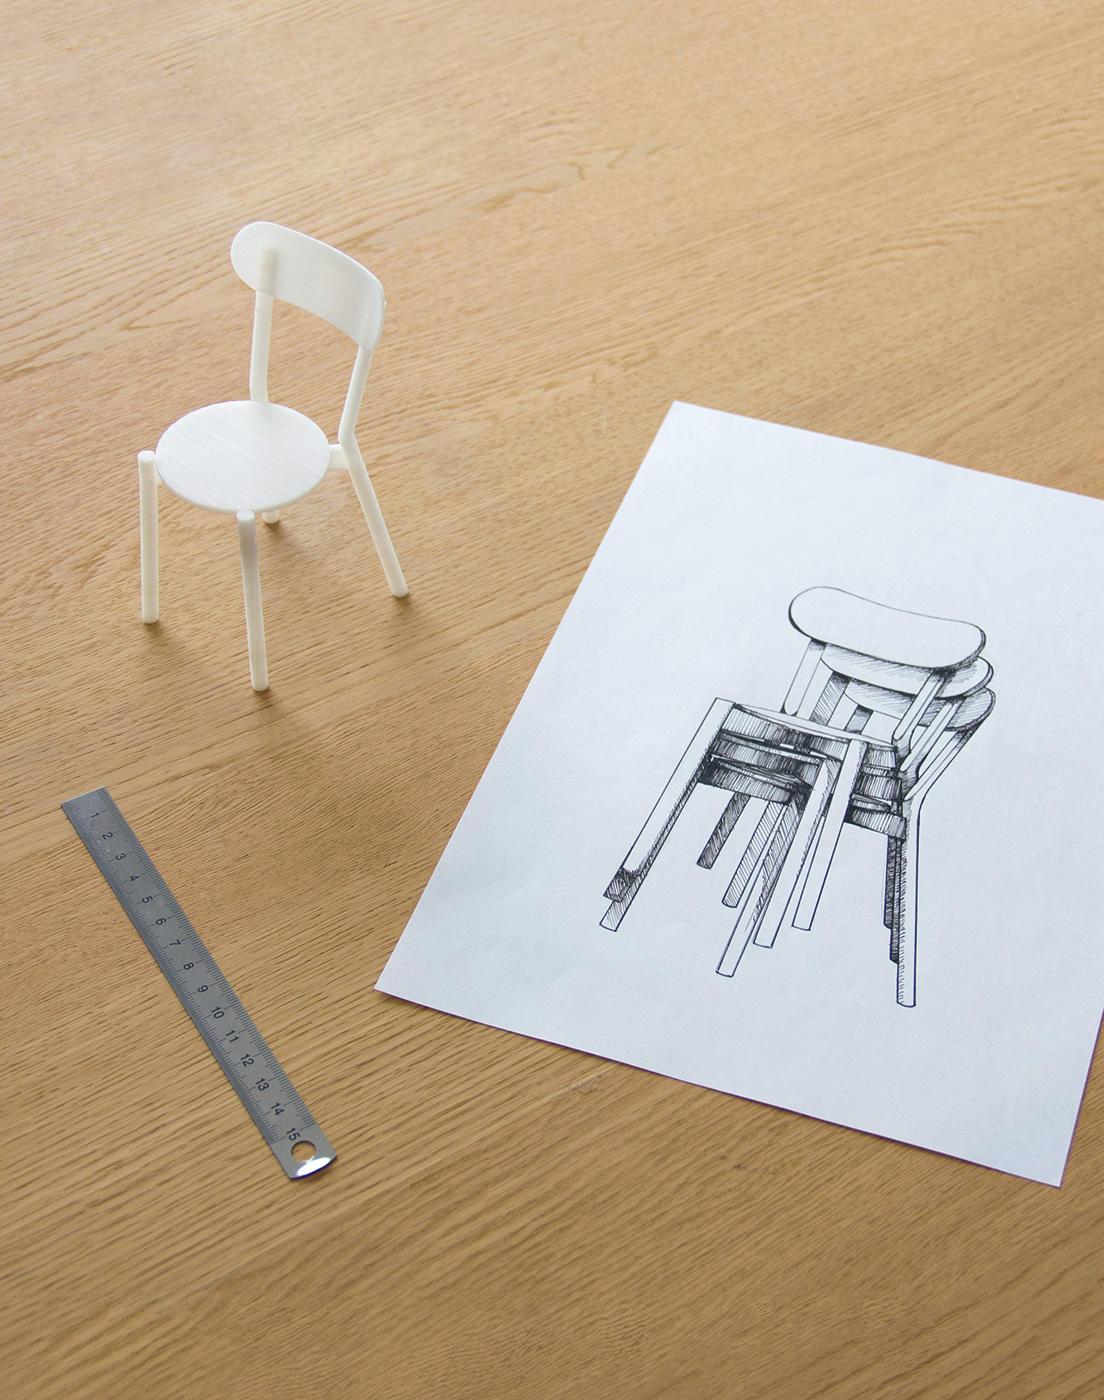 伝統的なカフェチェアを参照して生まれた《キャストール》の椅子のスケッチと模型。この椅子は5脚までスタッキングが可能。